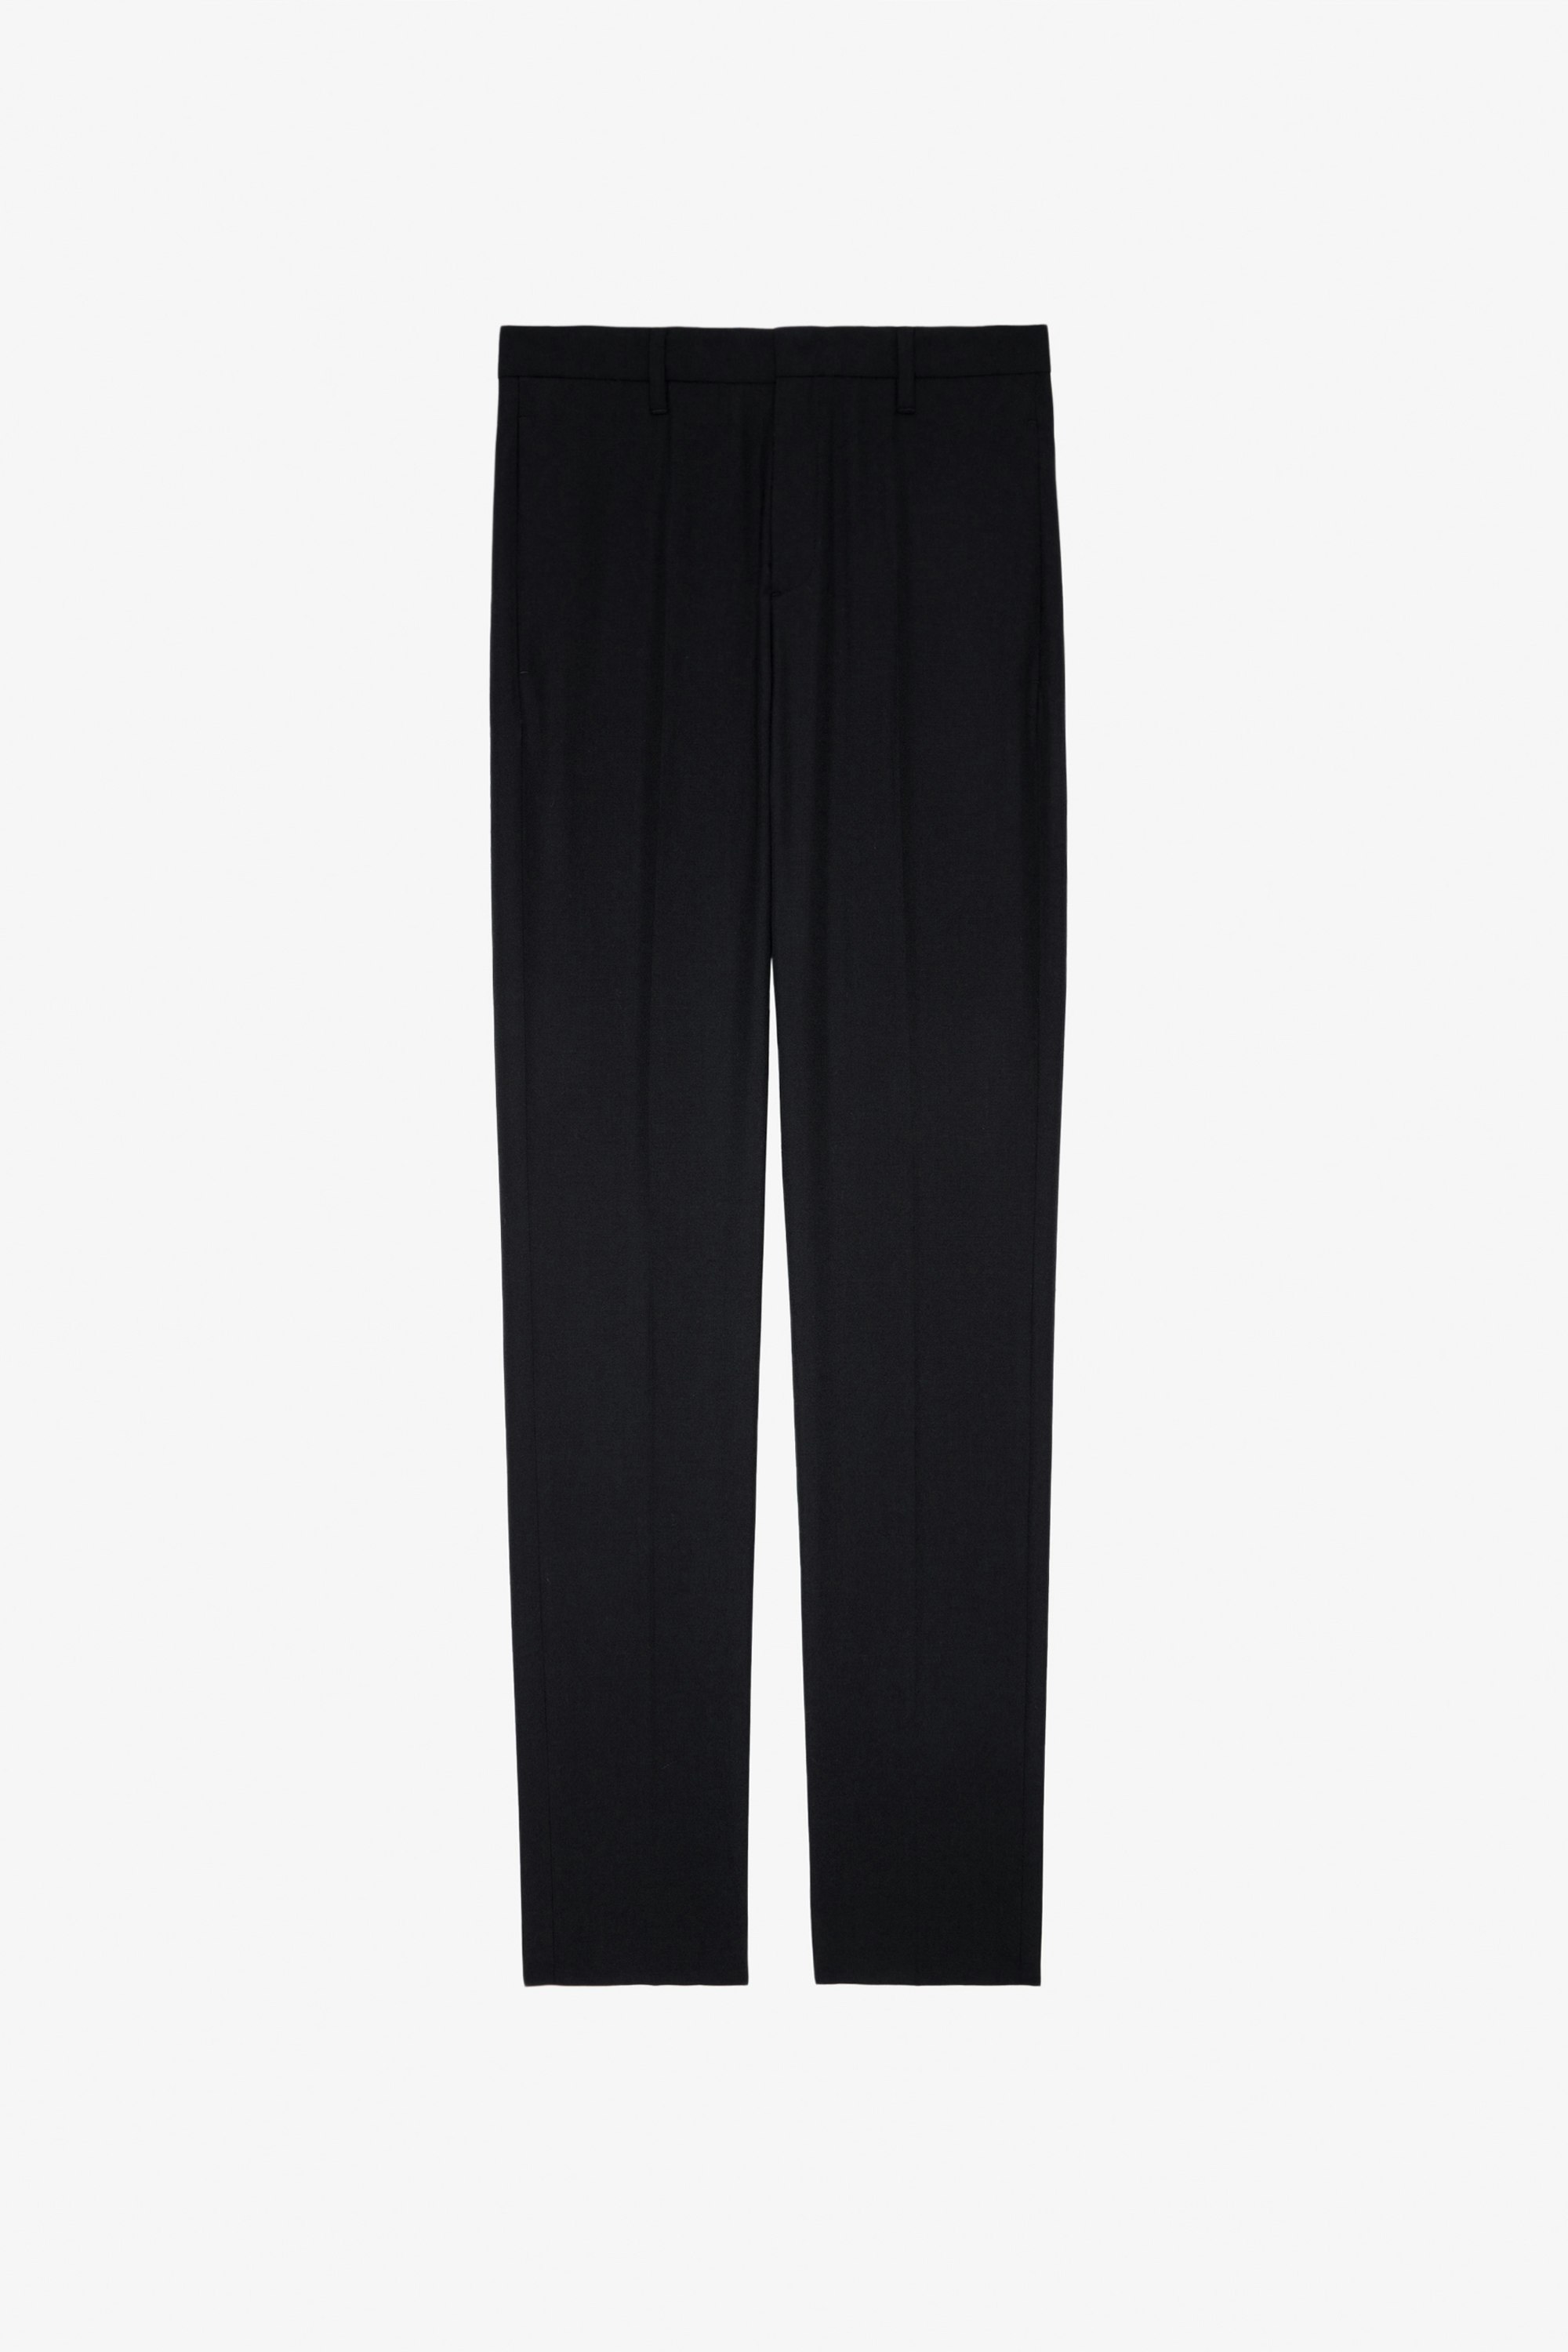 Pantalon Paris - Pantalon de tailleur en laine noire orné d'une étiquette tailoring au dos unisexe.